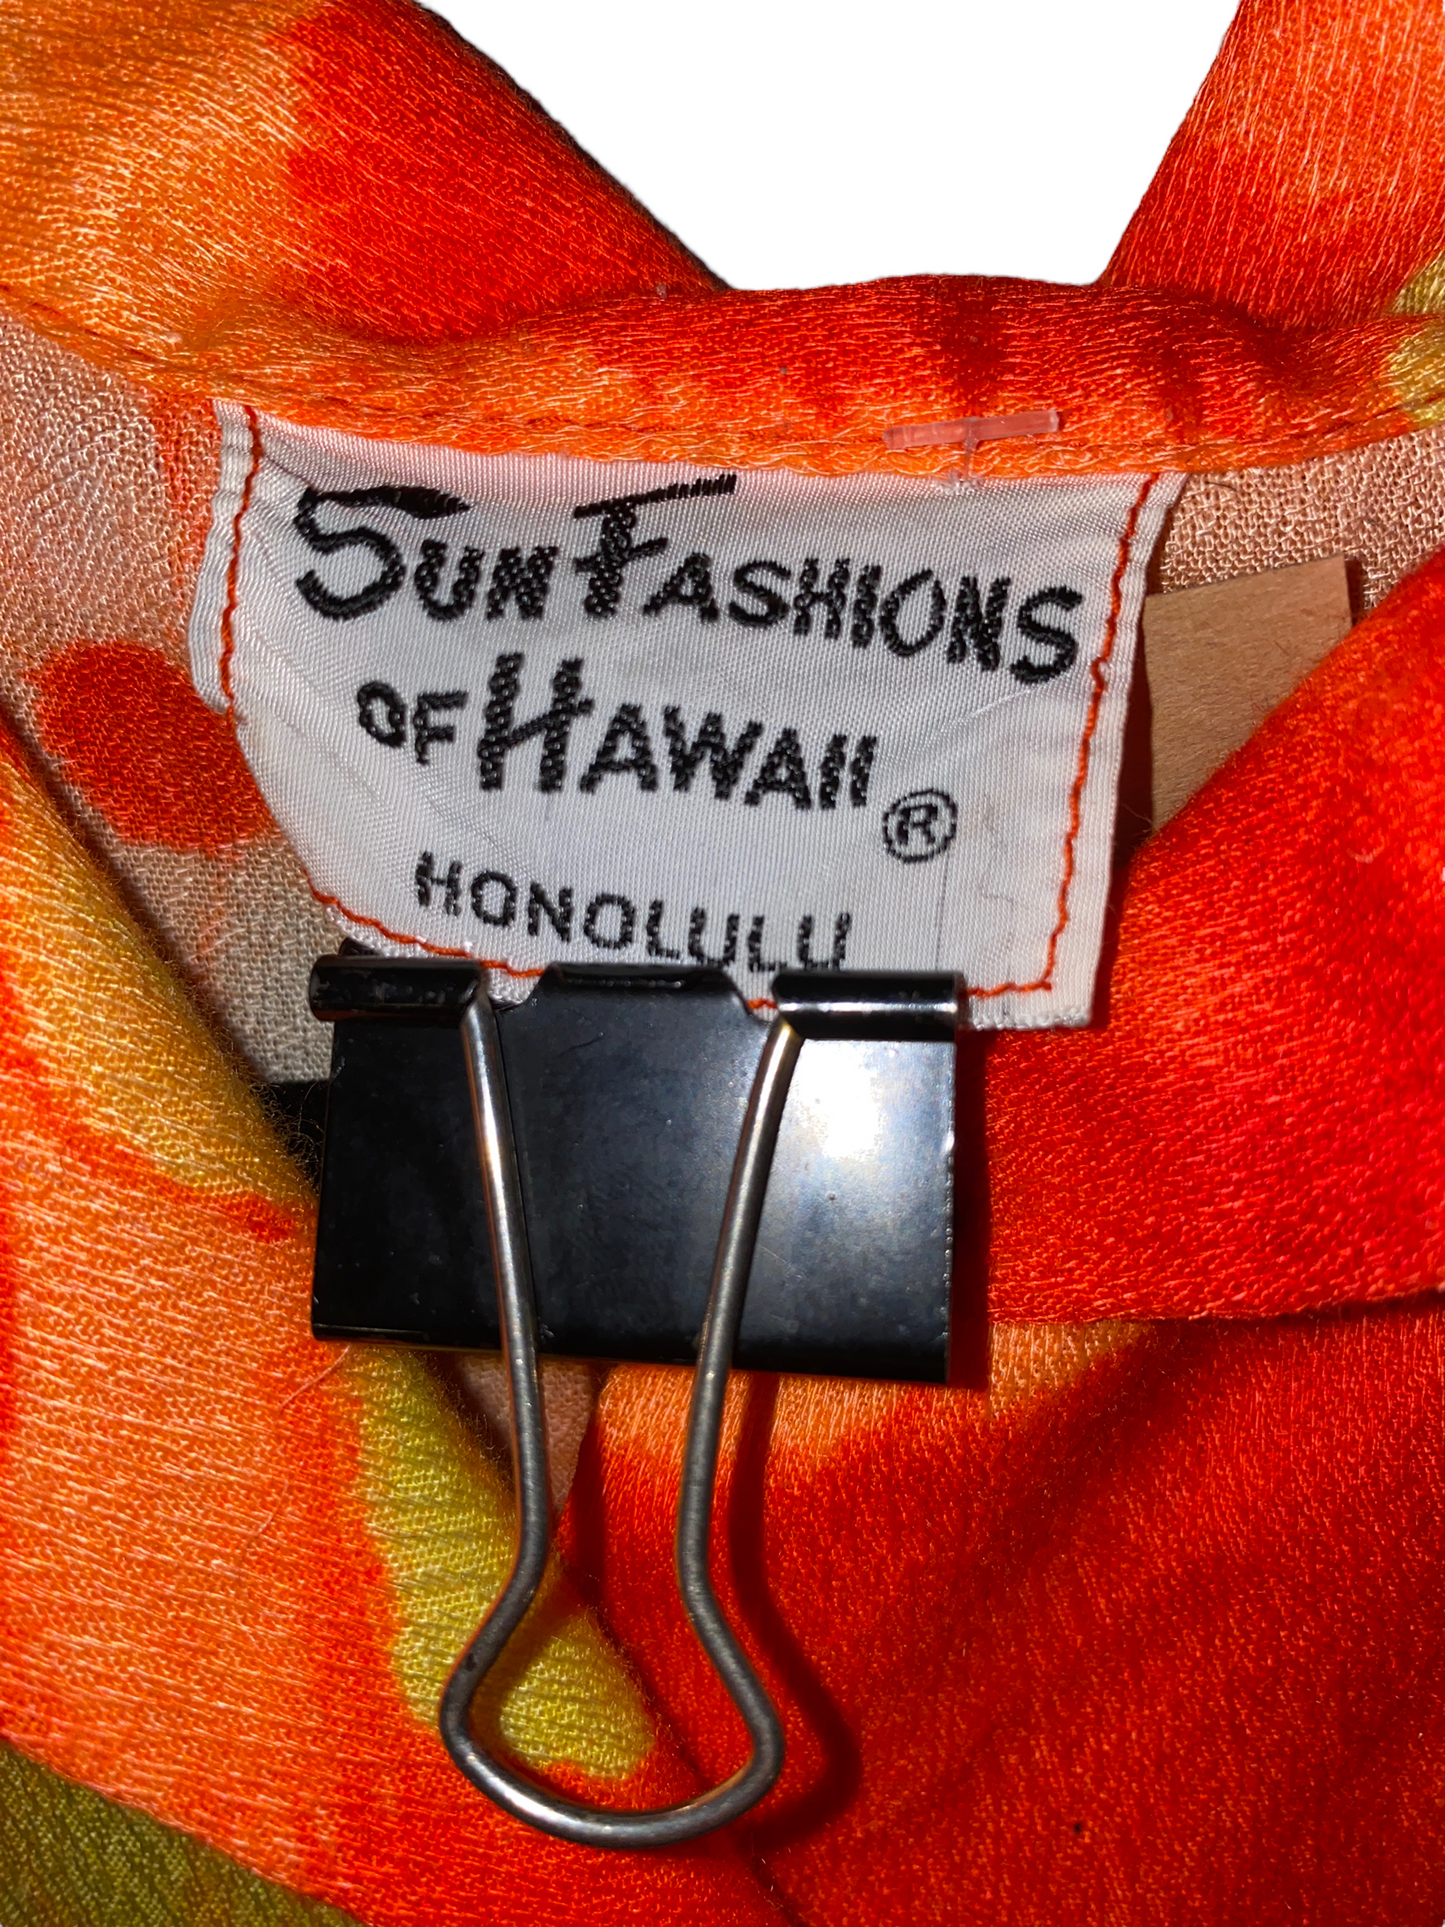 1960s Sun Fashions of Hawaii Mens Hawaiian Button Up